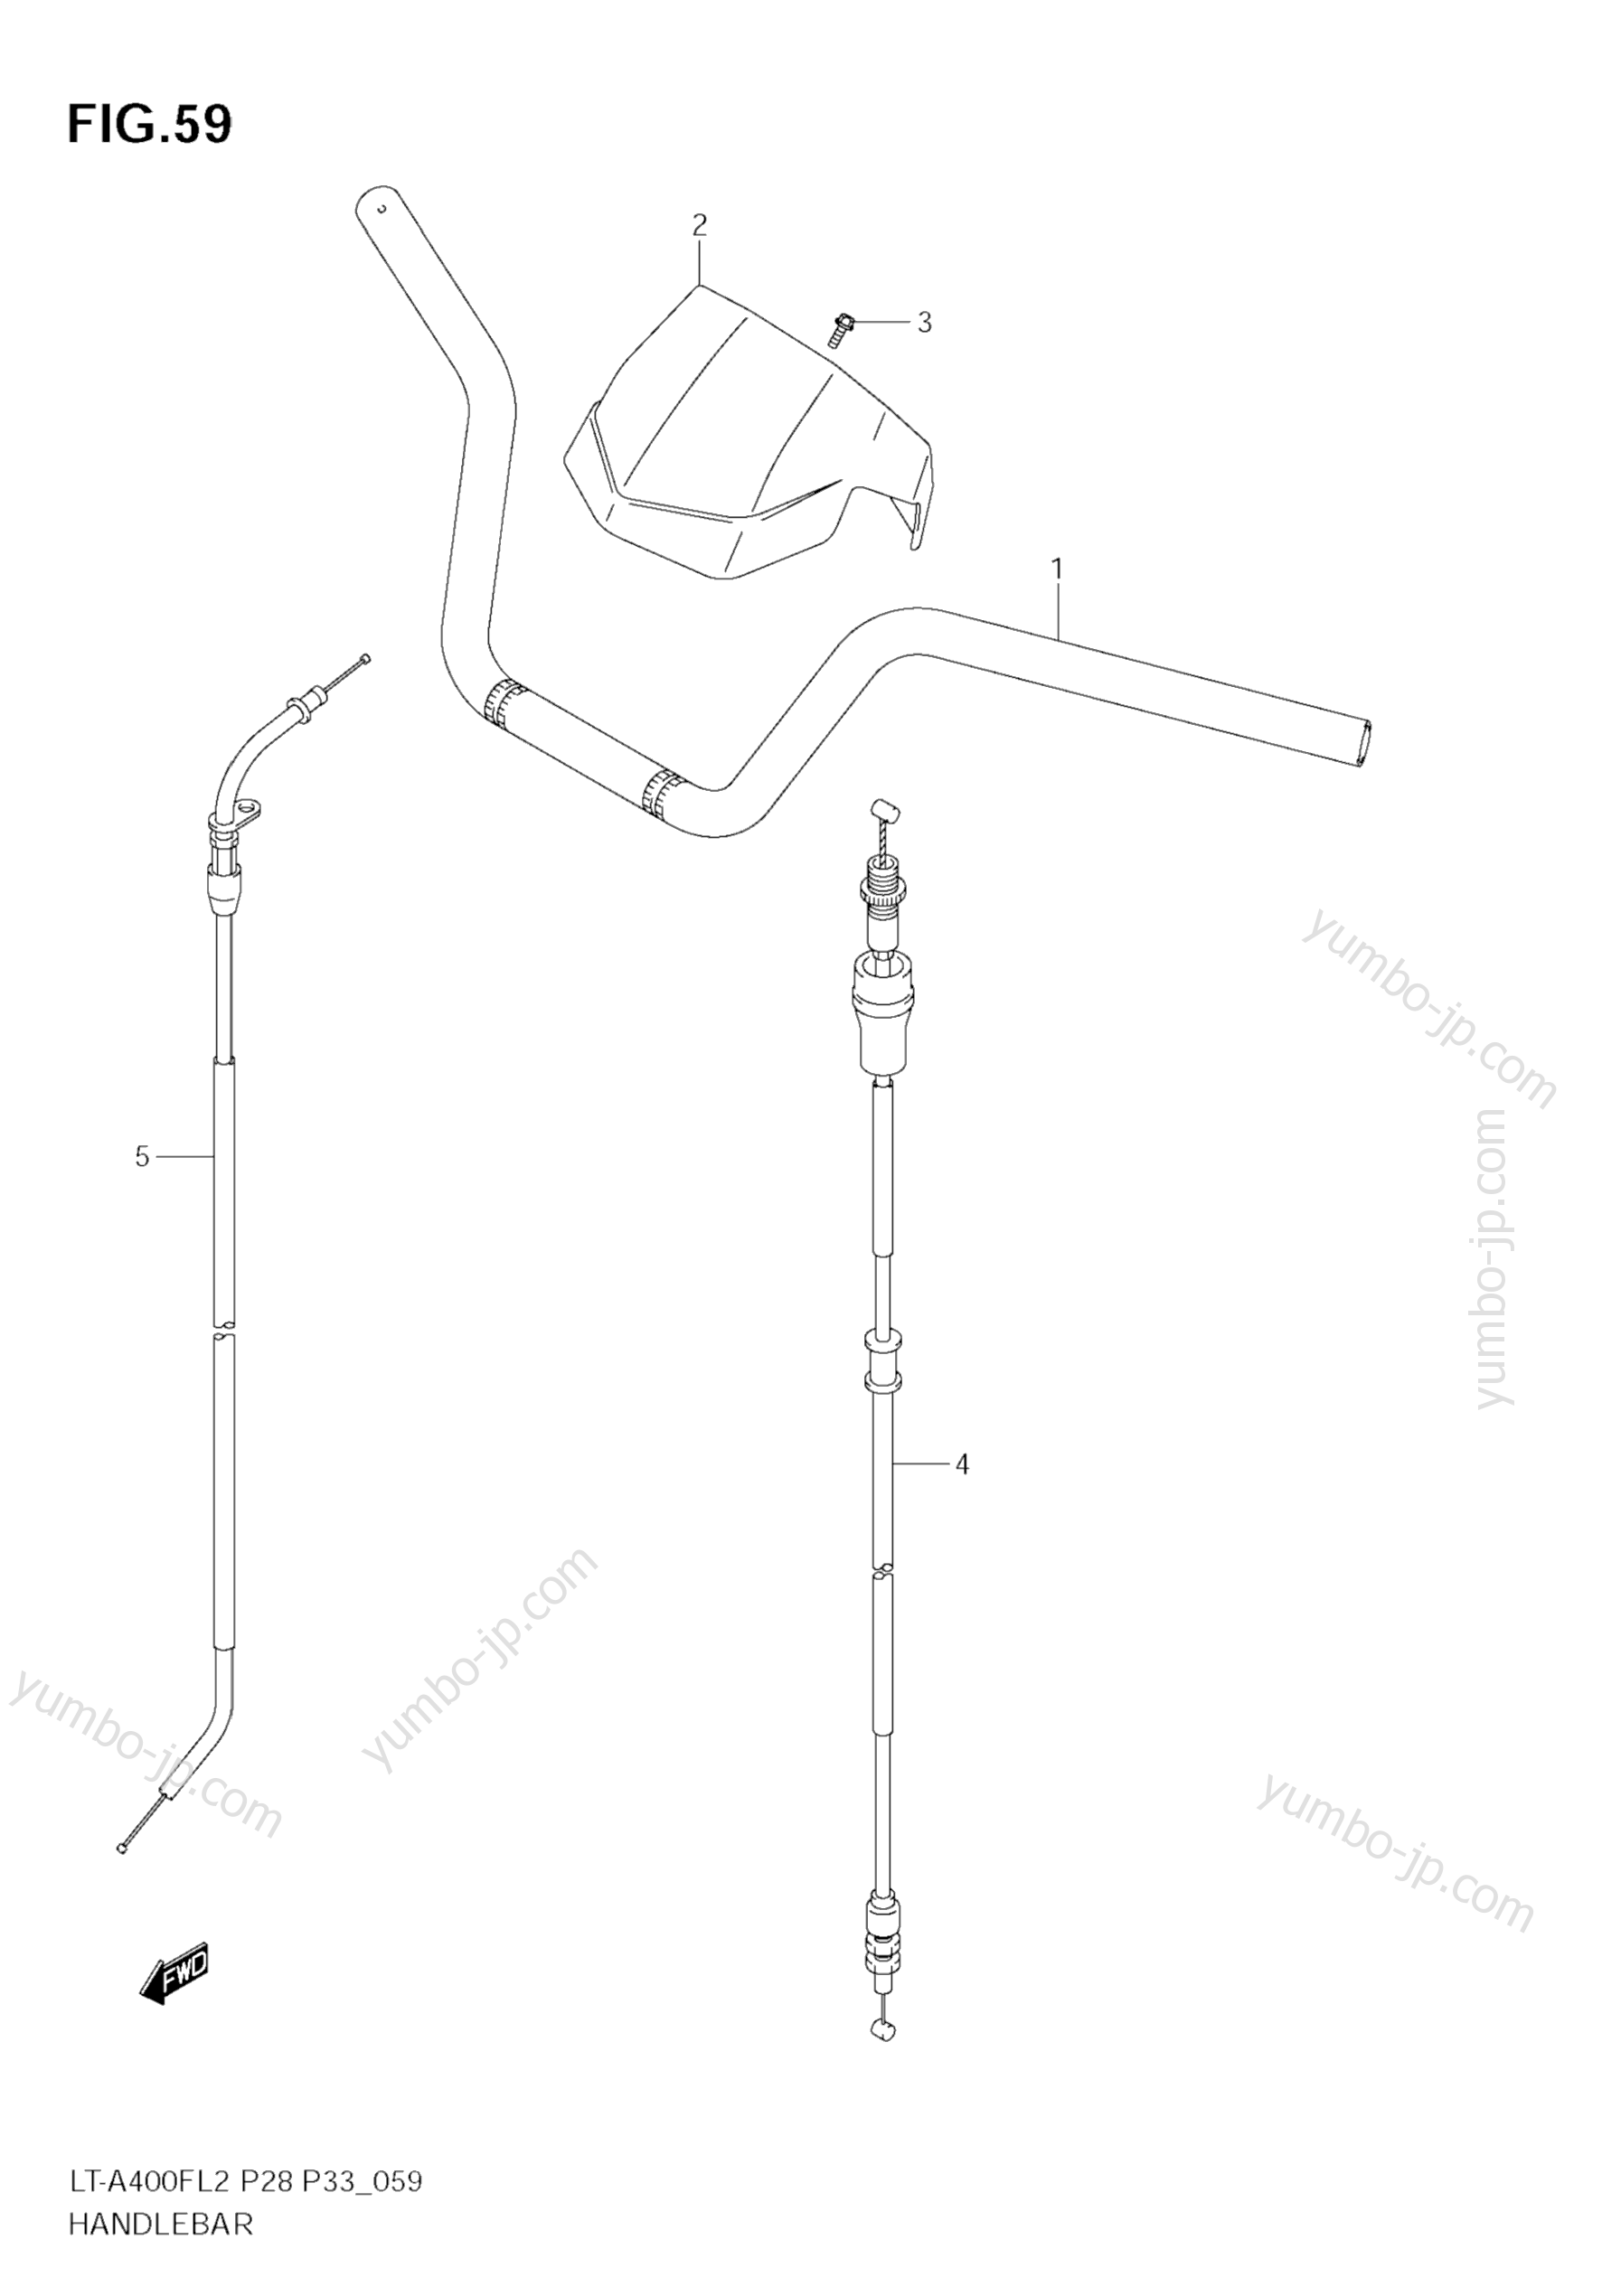 Румпель (рукоятка управления) для квадроциклов SUZUKI KingQuad (LT-A400F) 2012 г.